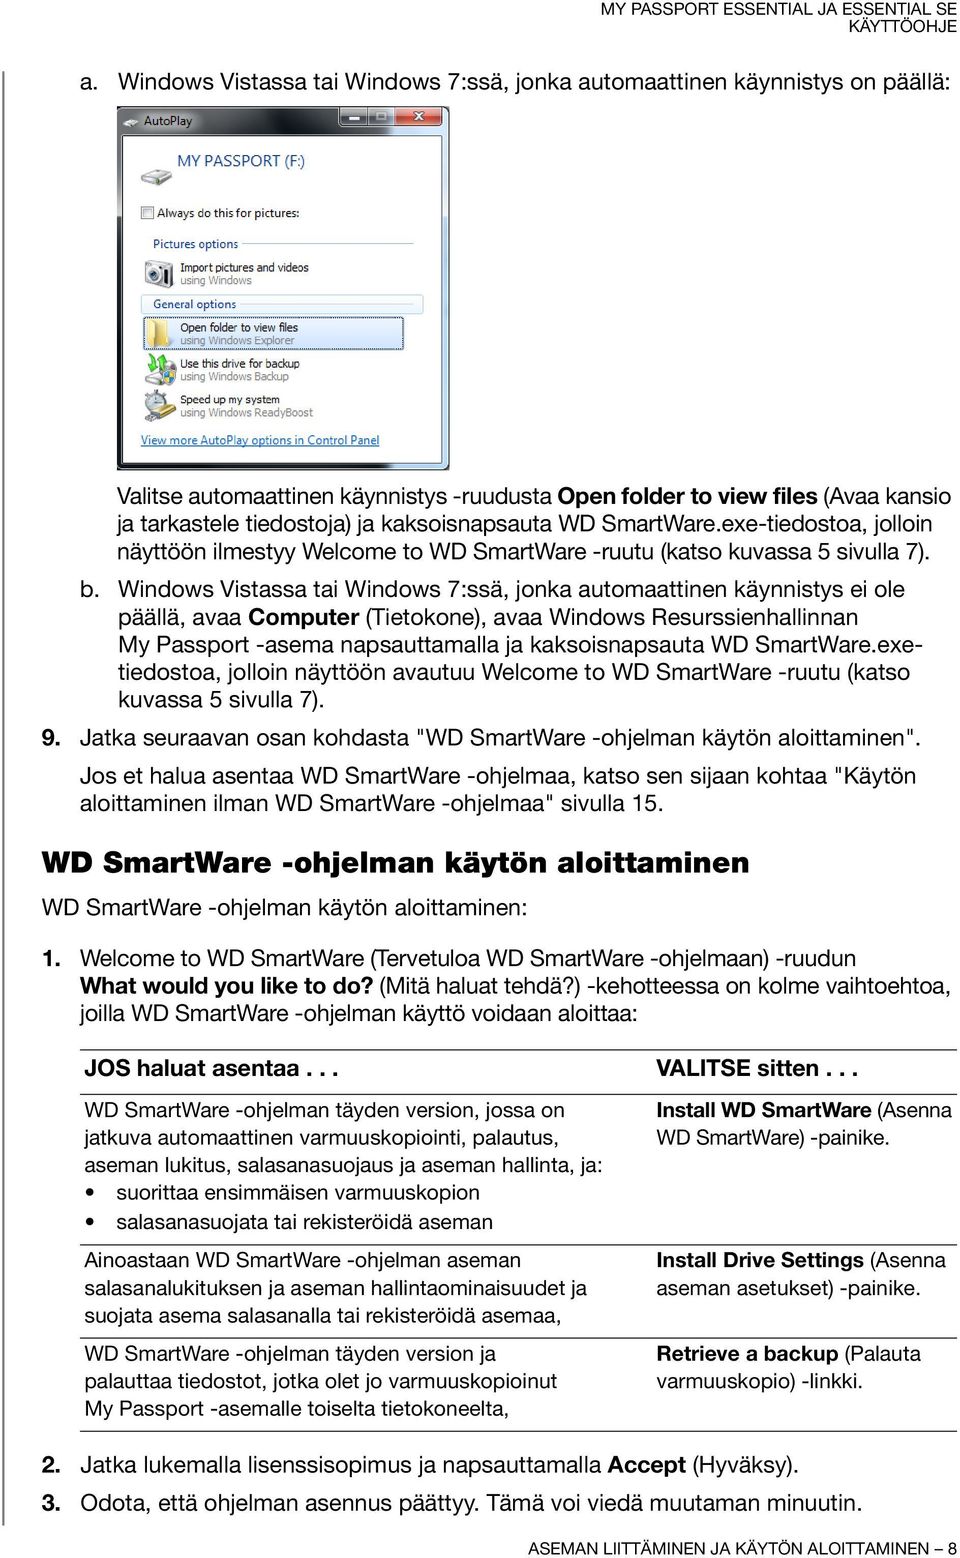 Windows Vistassa tai Windows 7:ssä, jonka automaattinen käynnistys ei ole päällä, avaa Computer (Tietokone), avaa Windows Resurssienhallinnan My Passport -asema napsauttamalla ja kaksoisnapsauta WD